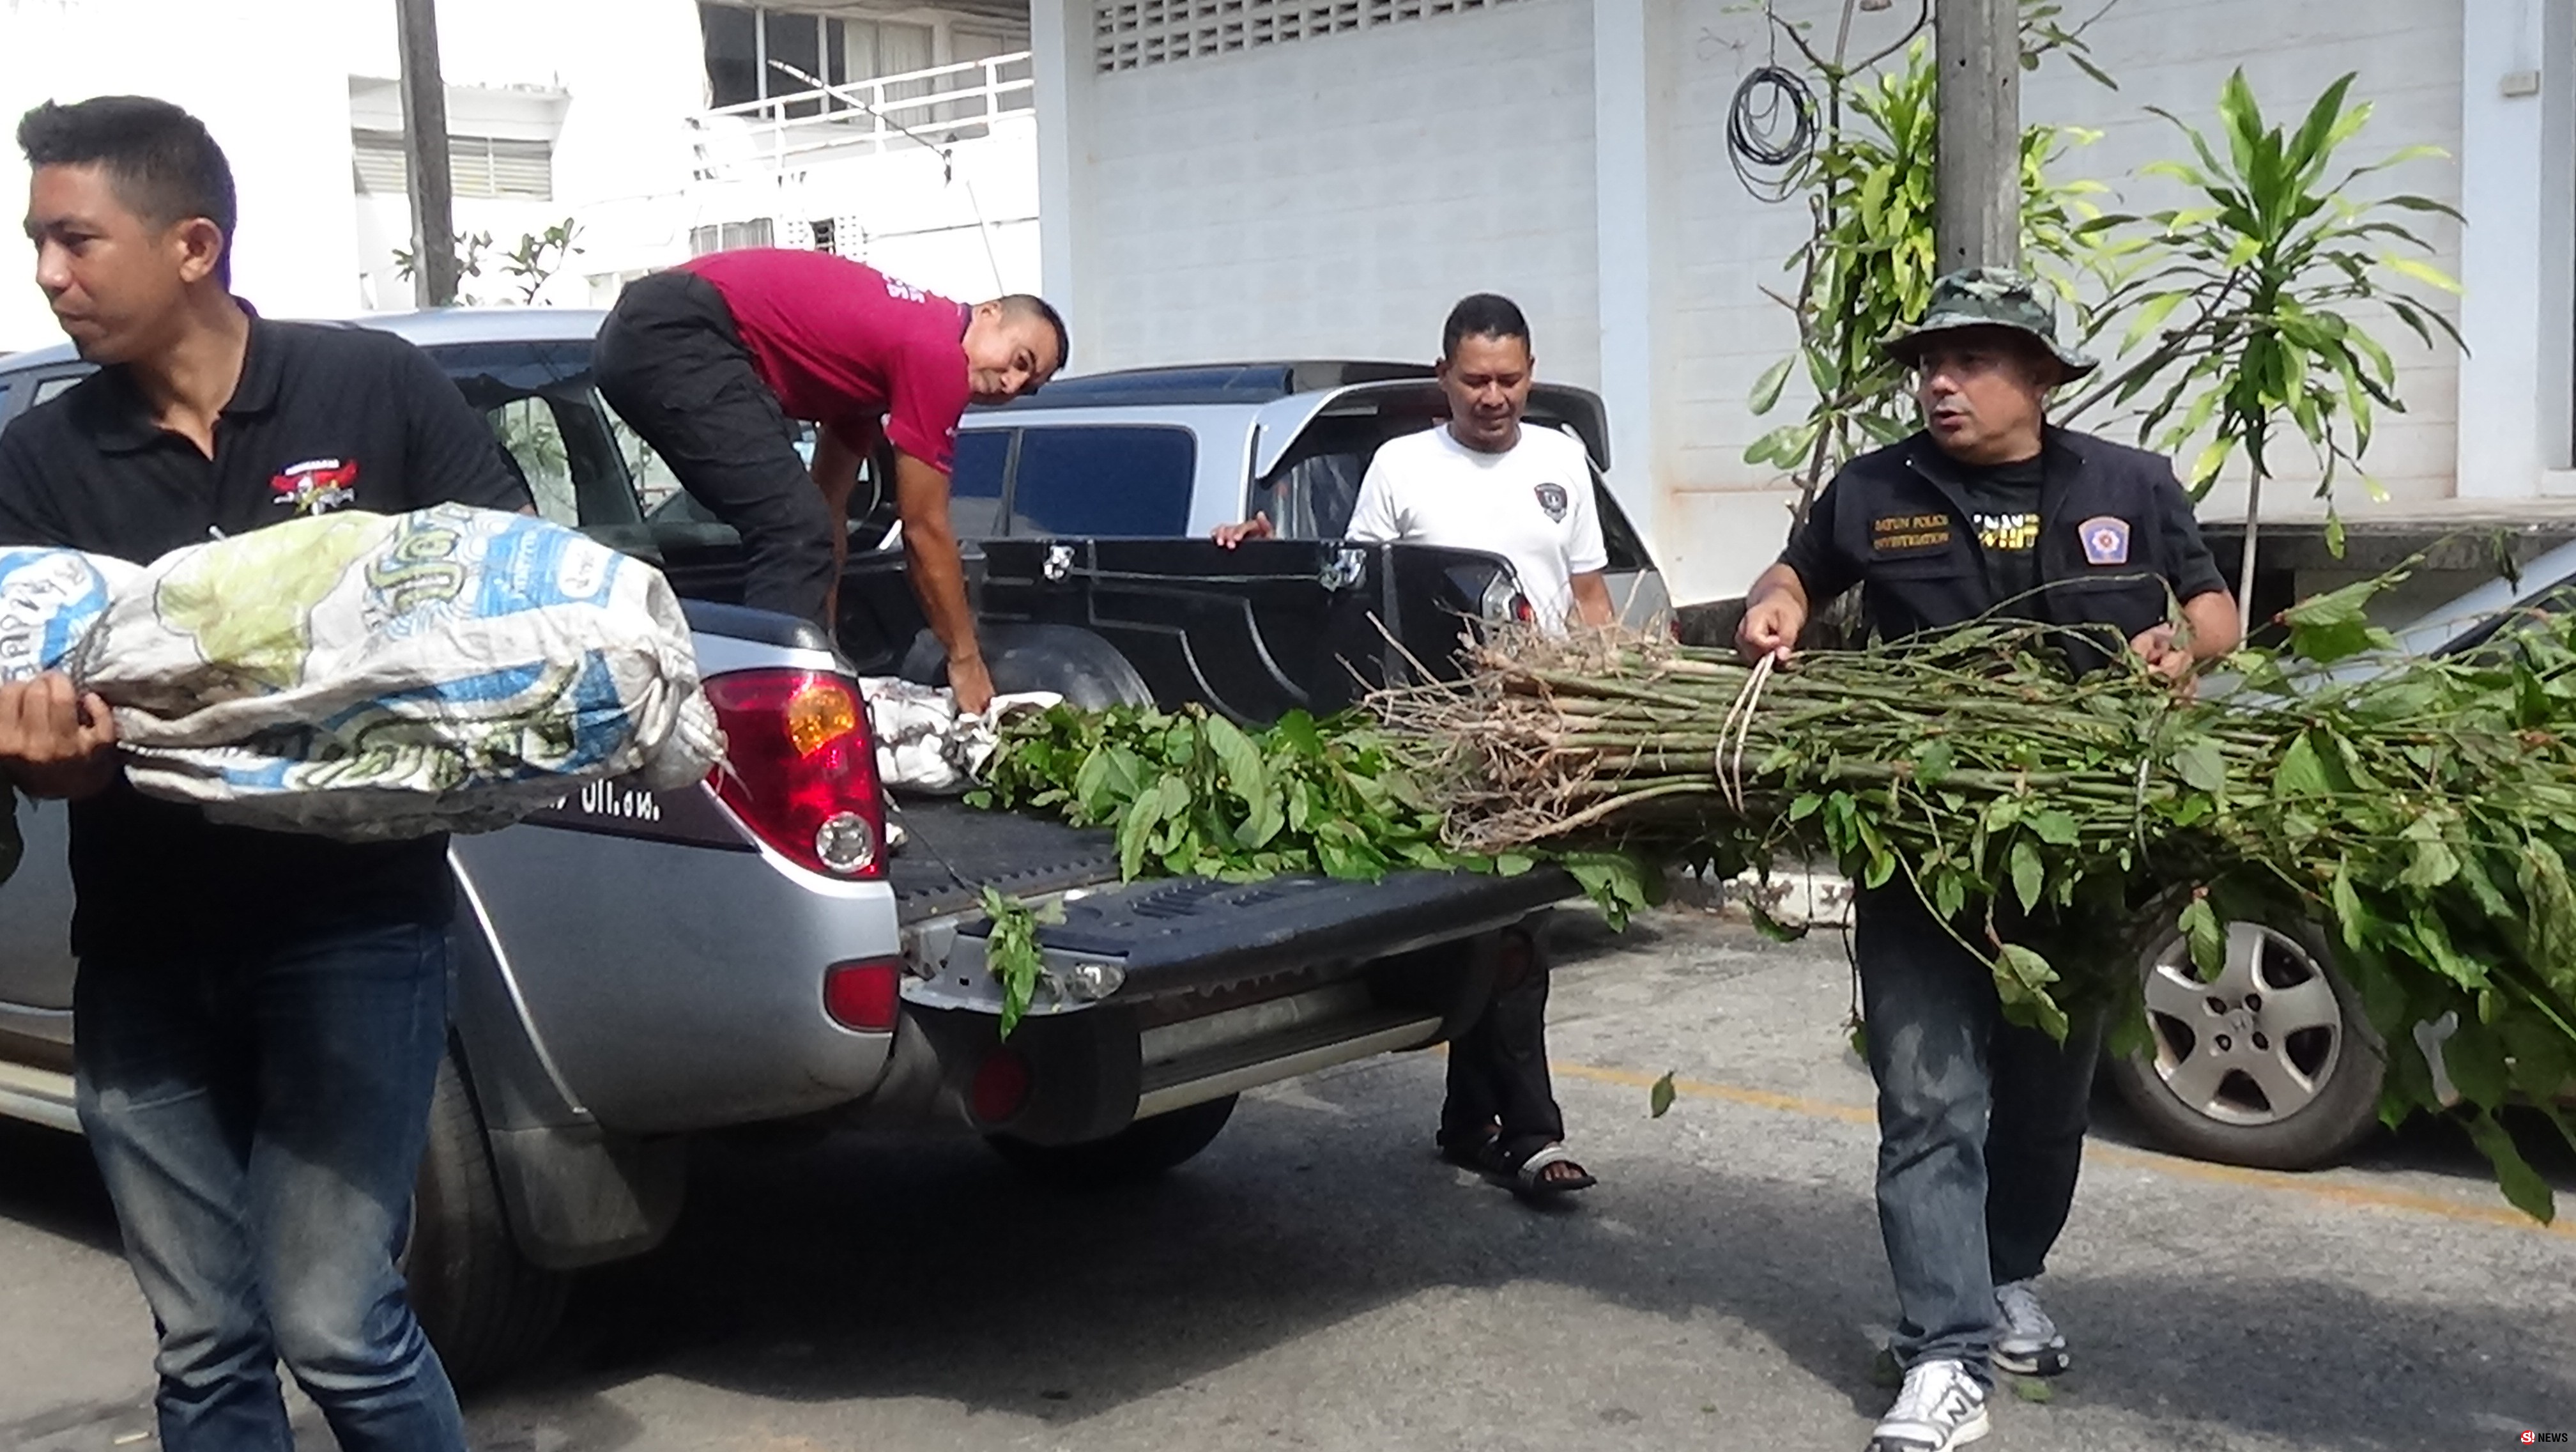 ทหาร-ตำรวจน้ำบุก “เกาะปูยู” ยึดพืชกระท่อมกว่า 100 ต้น-พบปลูกดาษดื่นล้อมรั้วบ้าน 